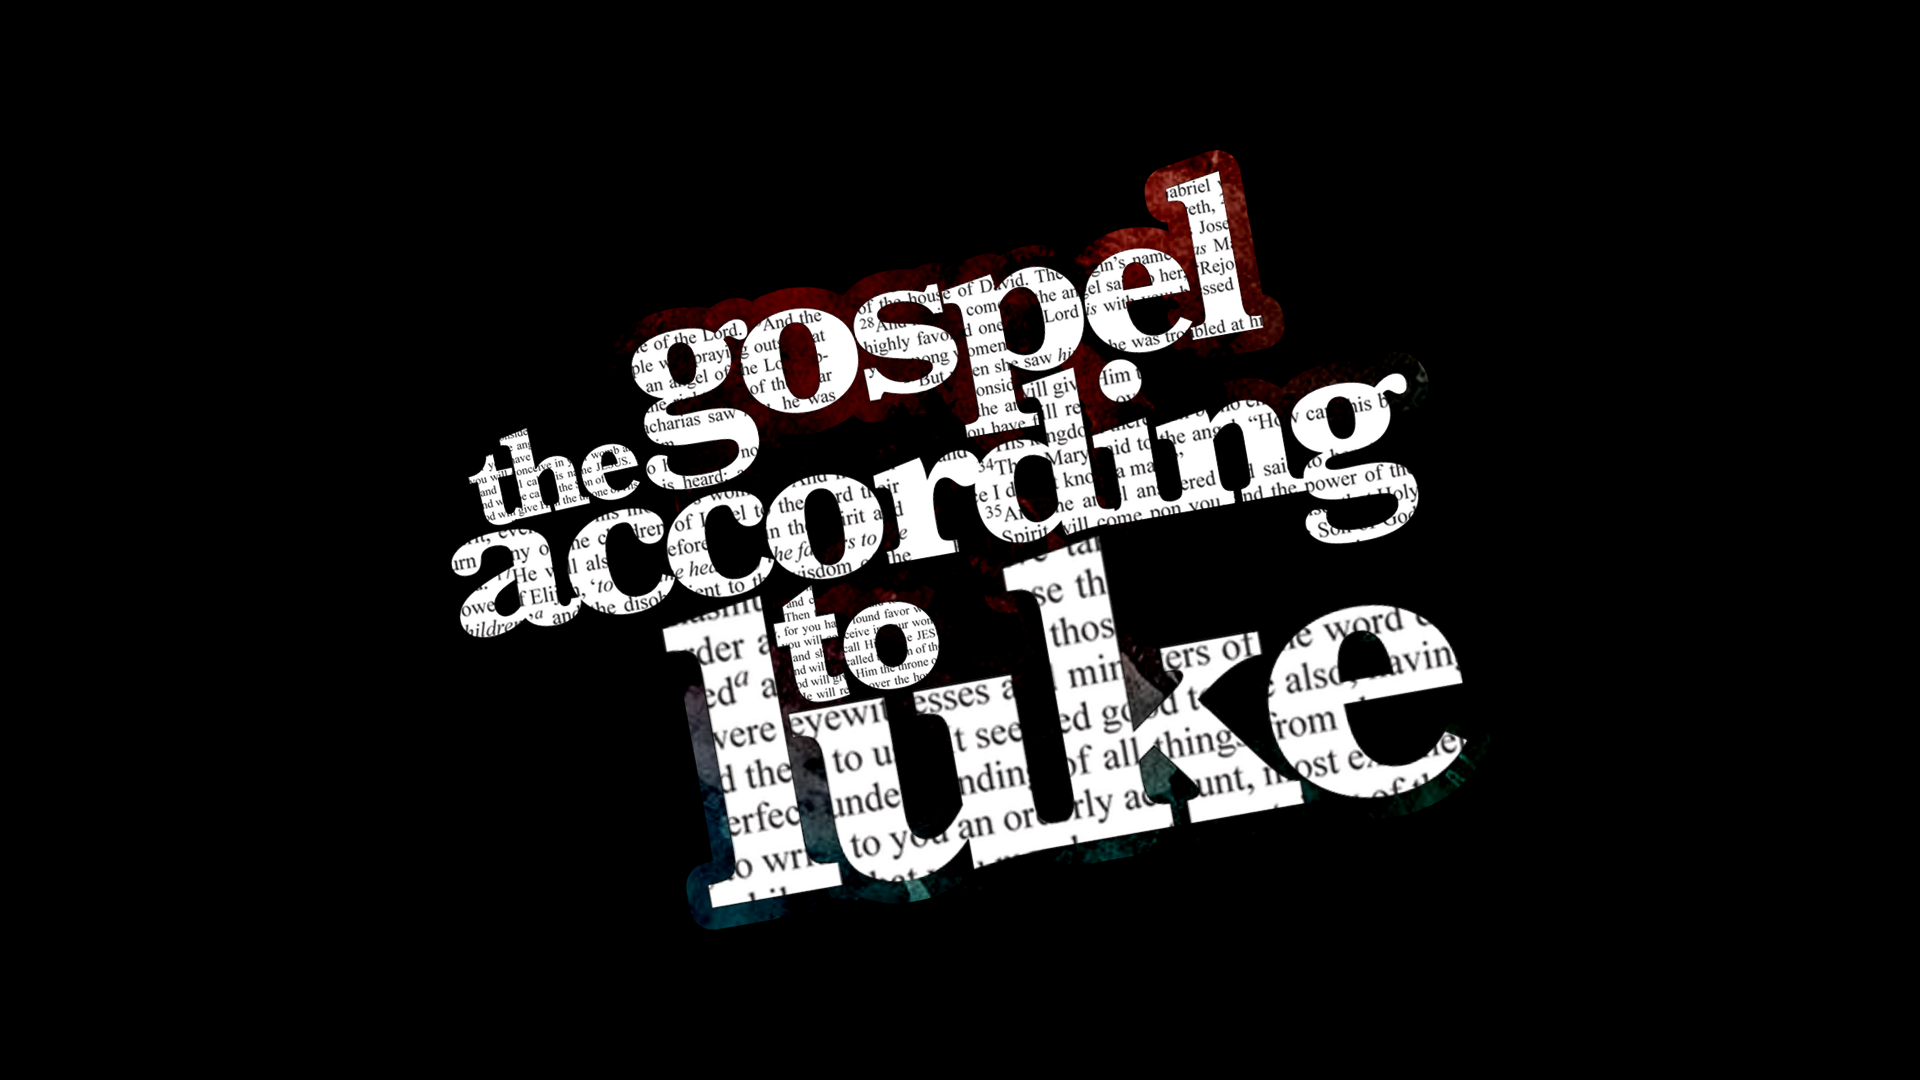 Luke: Sermon on the Mount